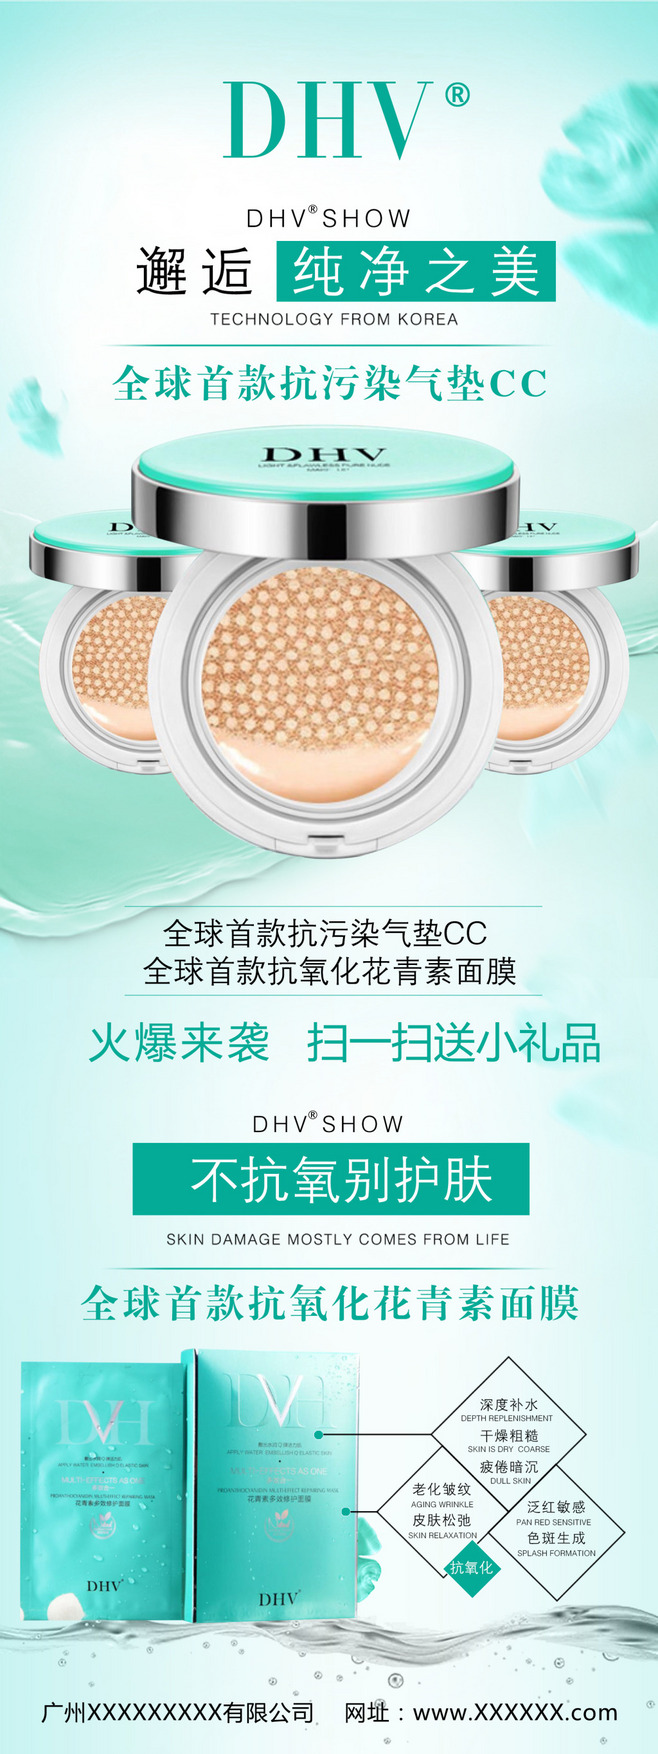 美容化妆品企业品牌产品宣传的展架海报设计